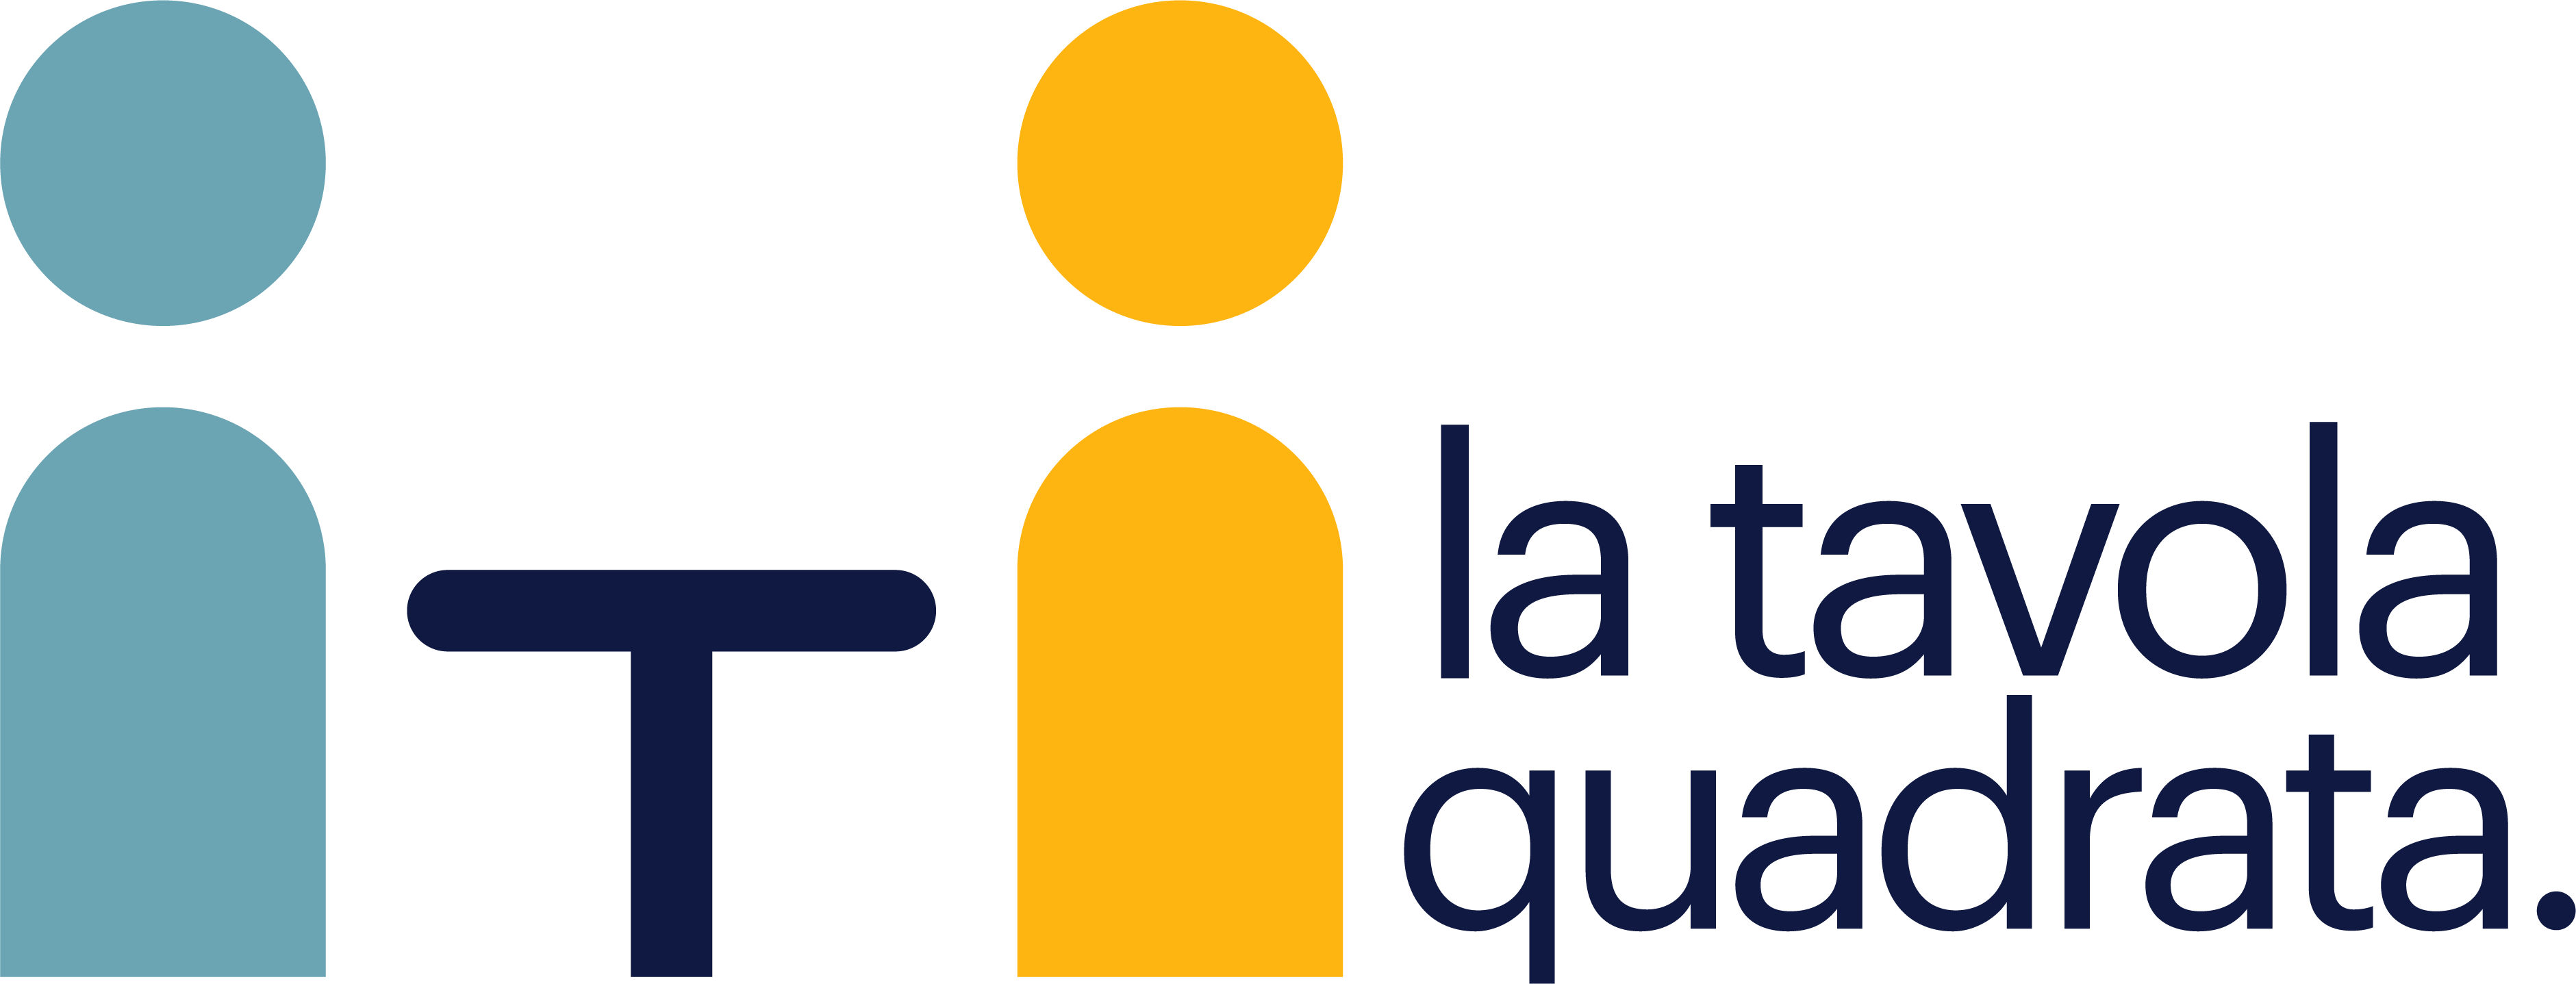 la tavola quadrata _ logo